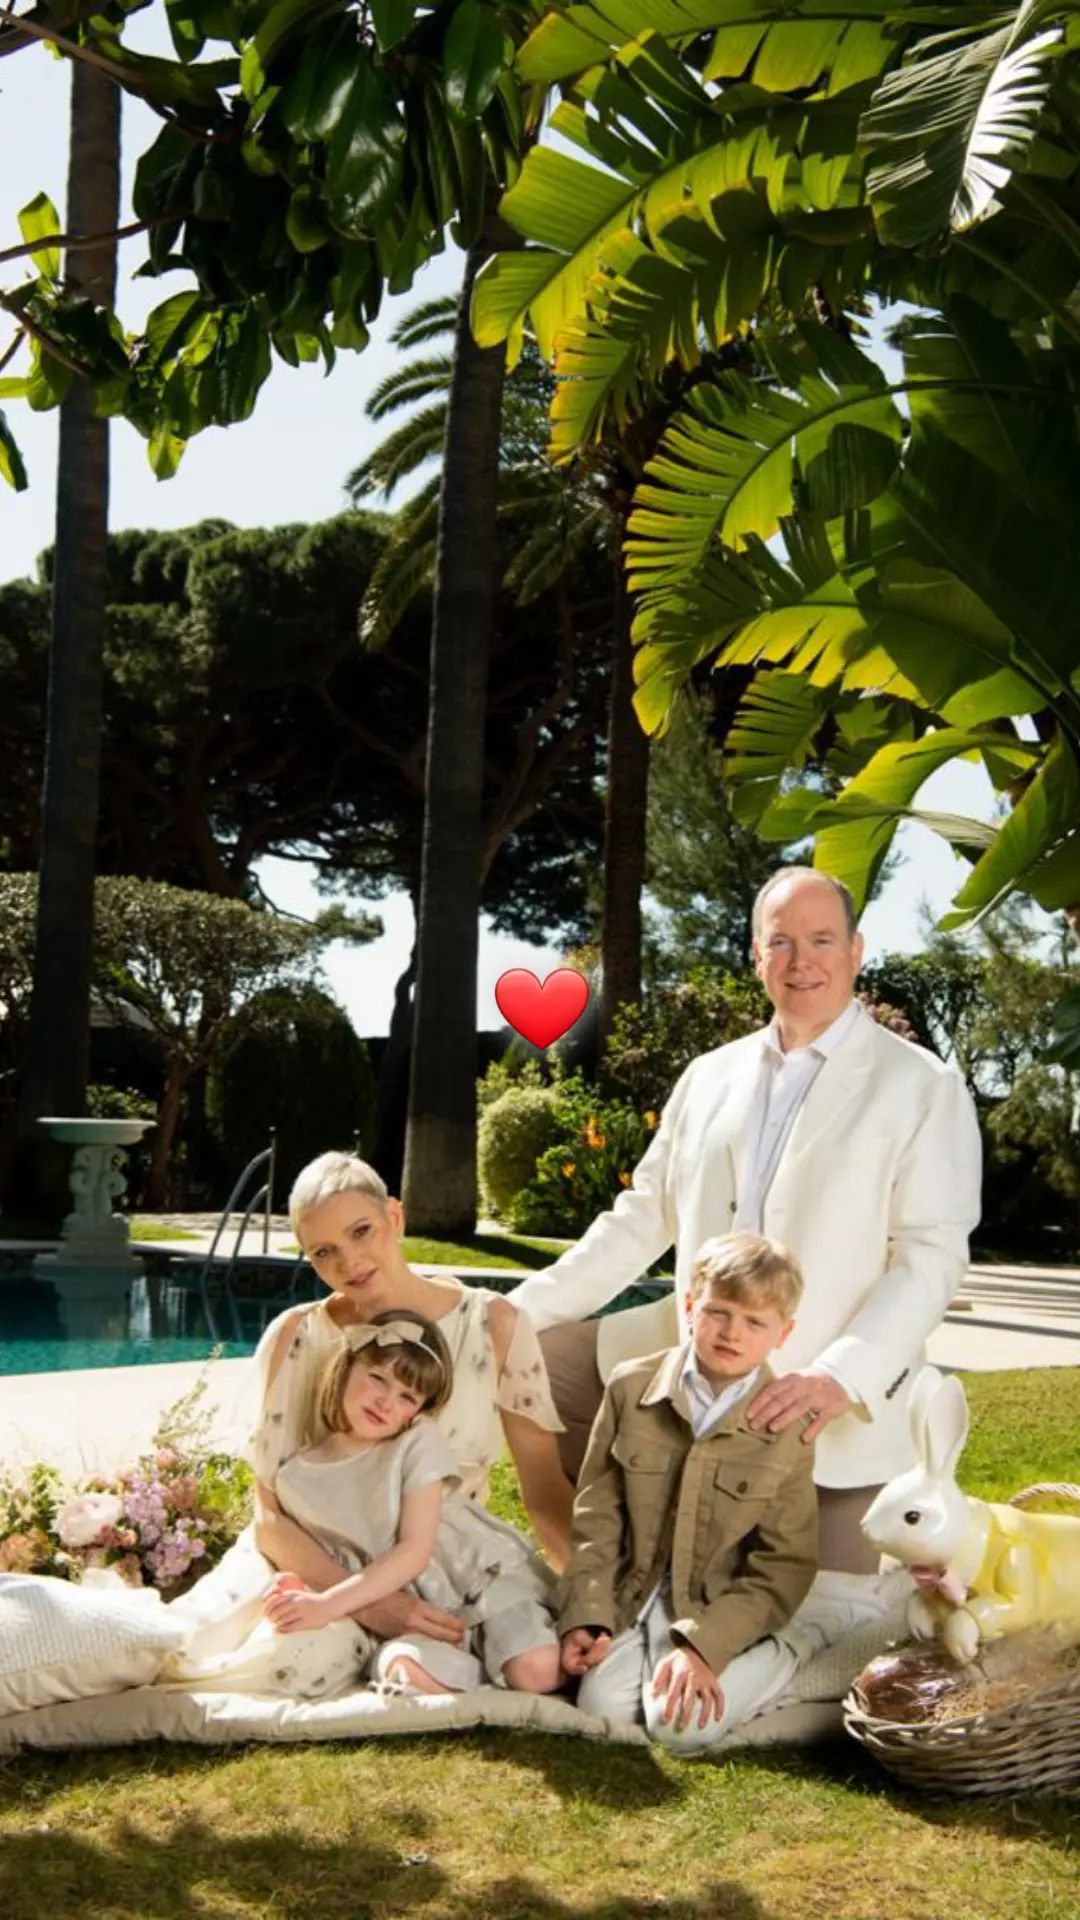 Księżna Charlene na wielkanocnych zdjęciach z rodziną